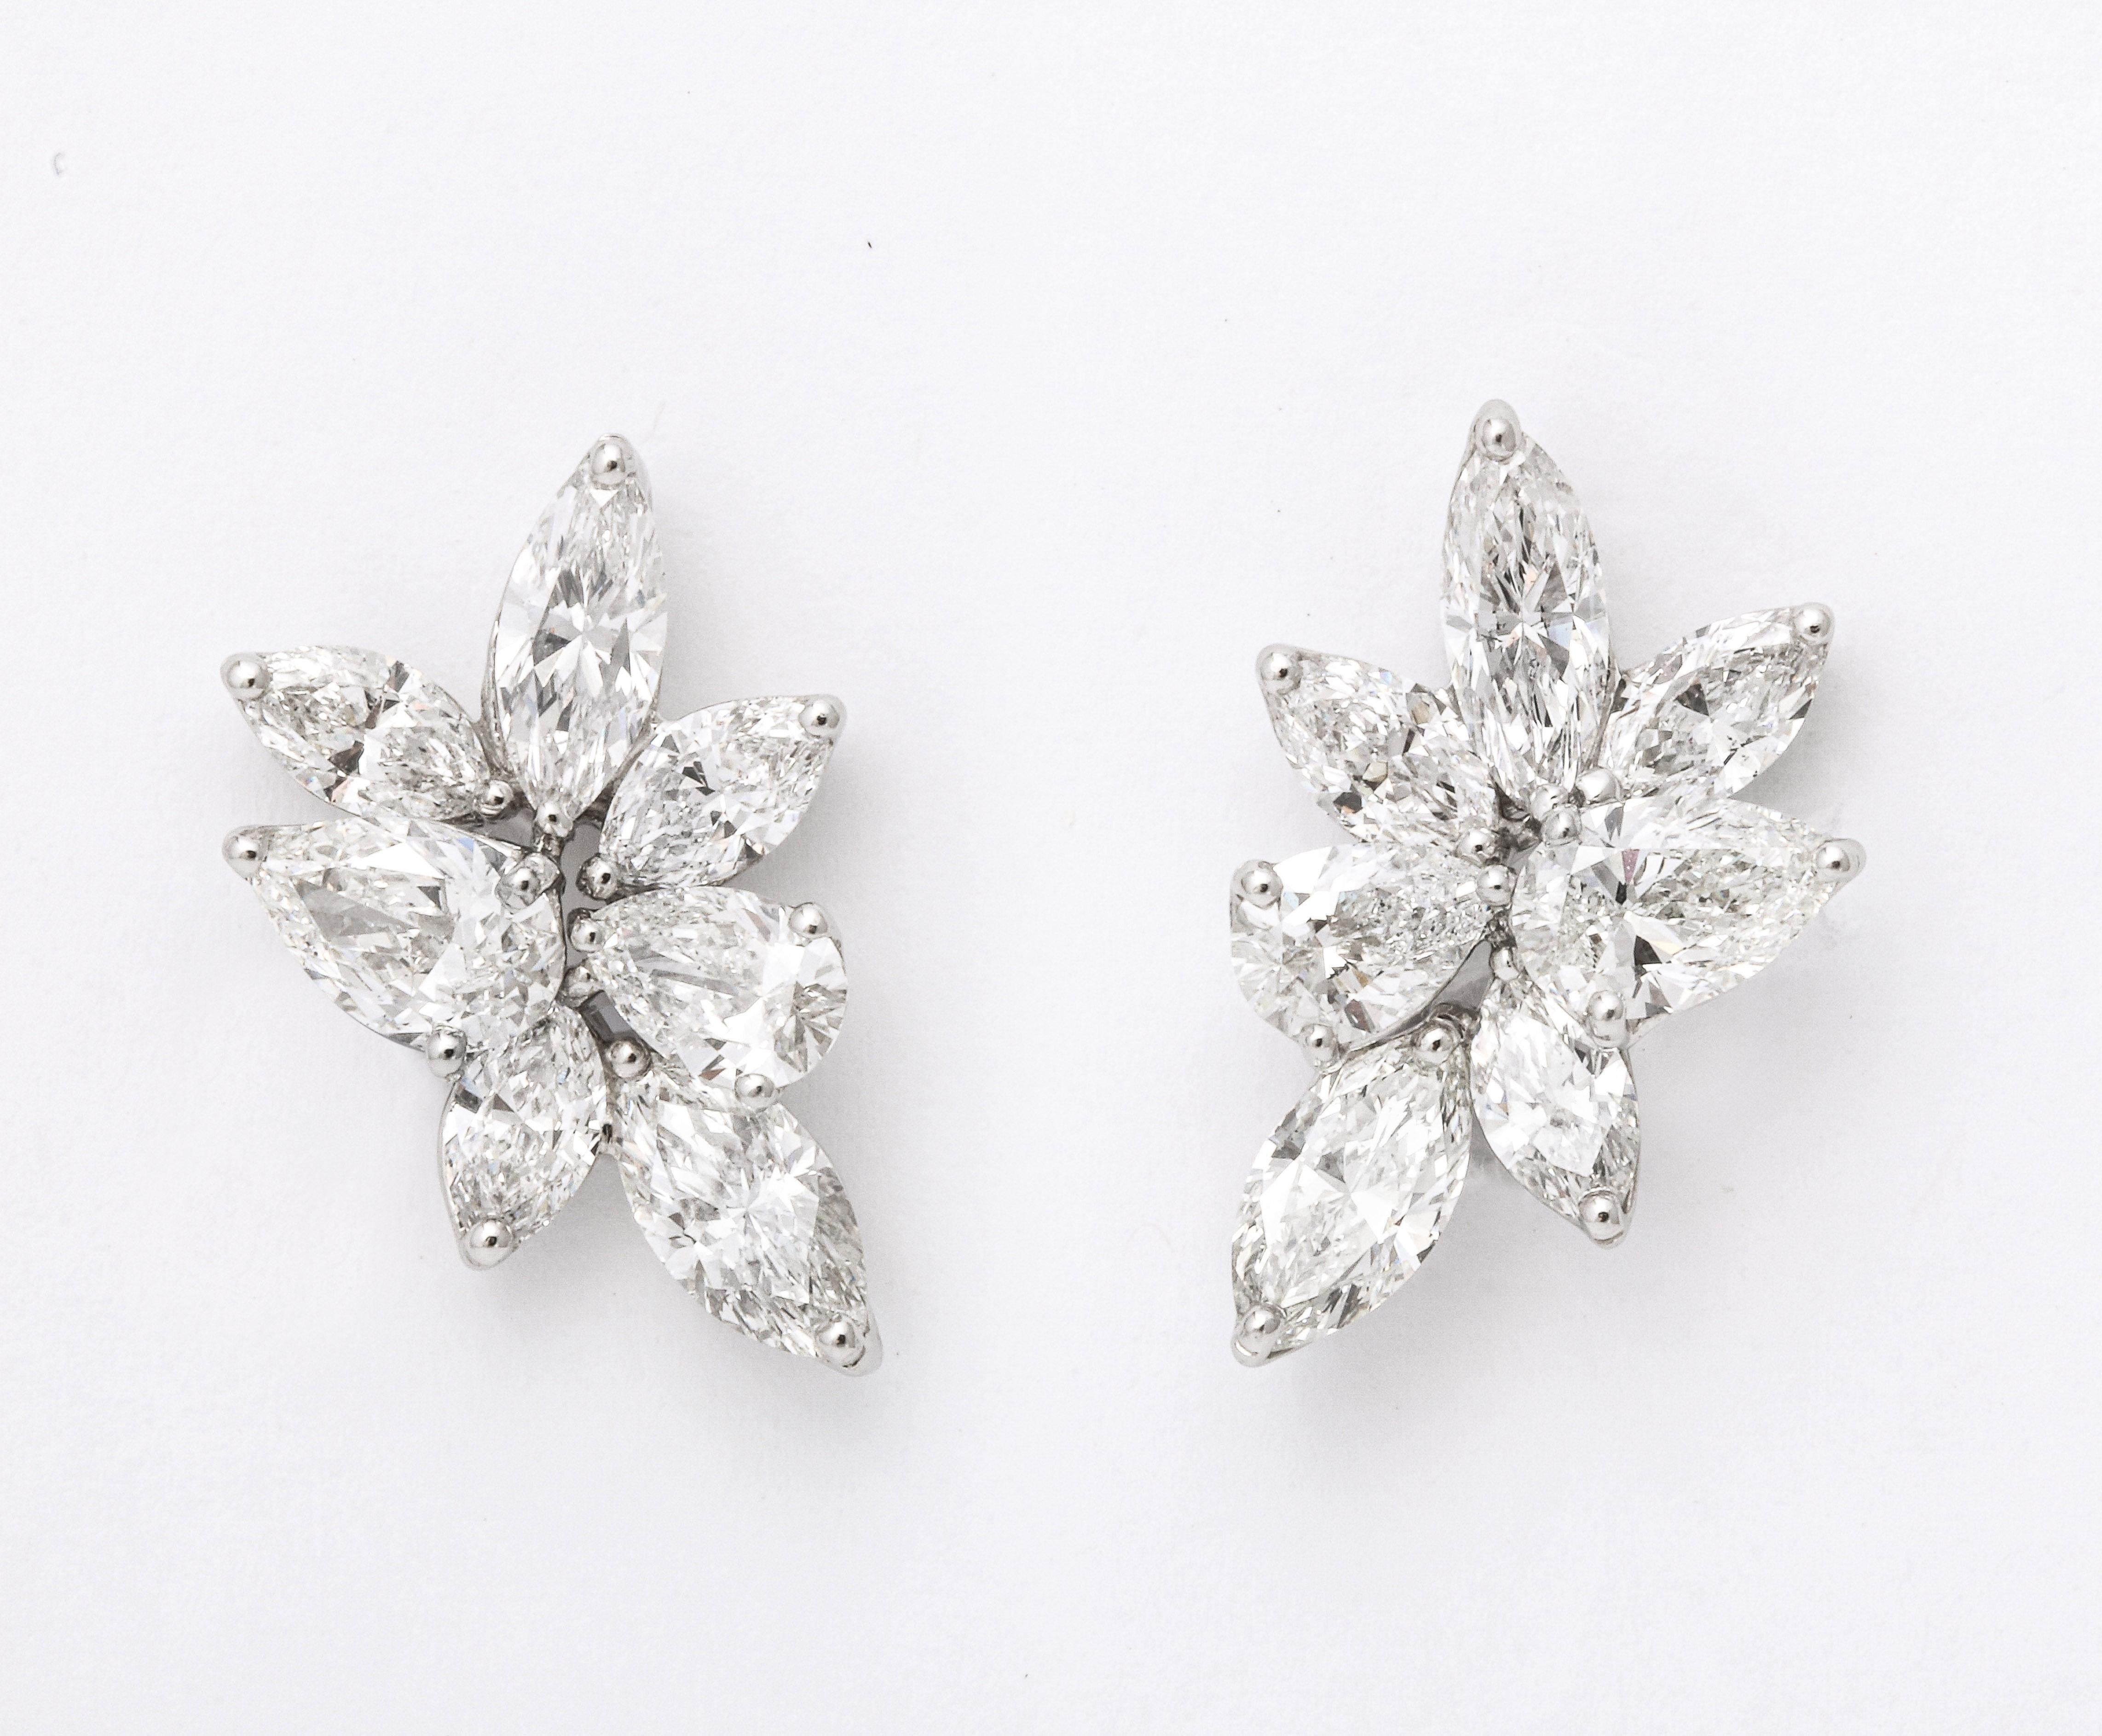 
Une élégante paire de boucles d'oreilles en forme de grappe de diamants. 

7.39 carats de diamants blancs poire et marquise shake sertis en platine. 

Un peu moins d'un pouce de long. 

Le même style de boucles d'oreilles que vous trouverez dans